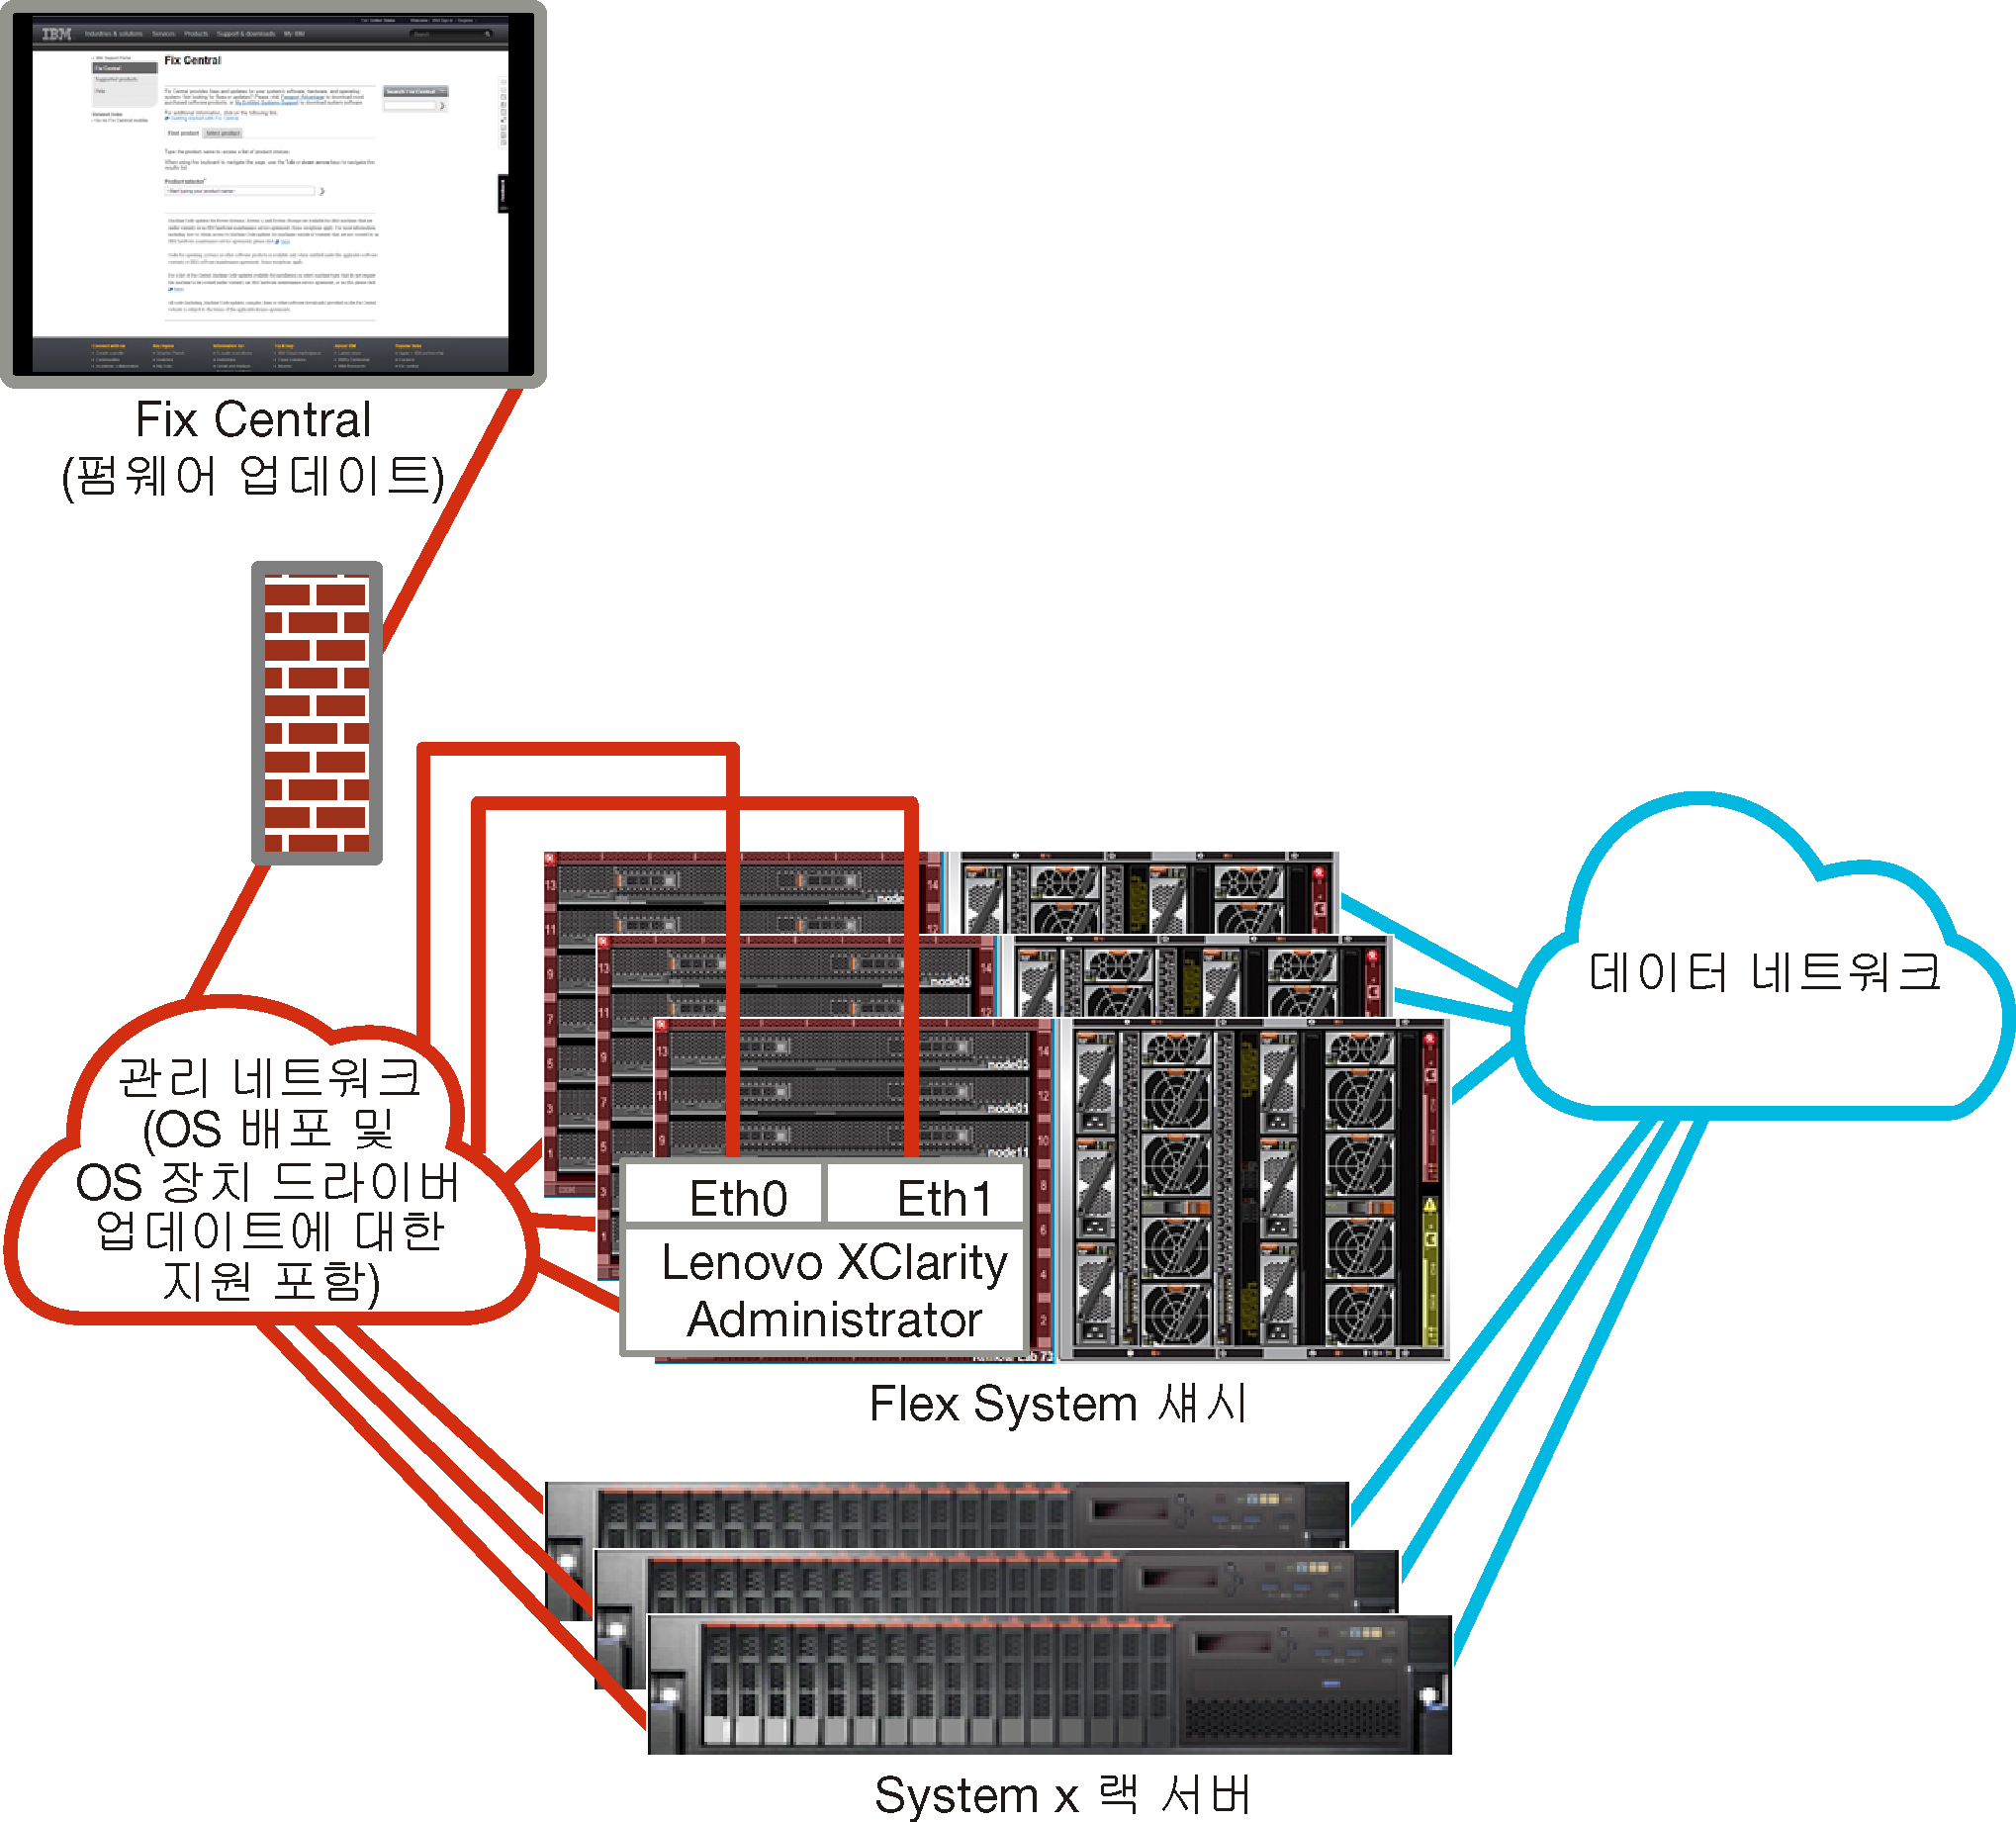 관리 네트워크의 일부로 운영 체제 네트워크가 포함된 가상으로 분리된 관리 및 데이터 네트워크의 상위 레벨 보기를 표시하는 그래픽입니다.